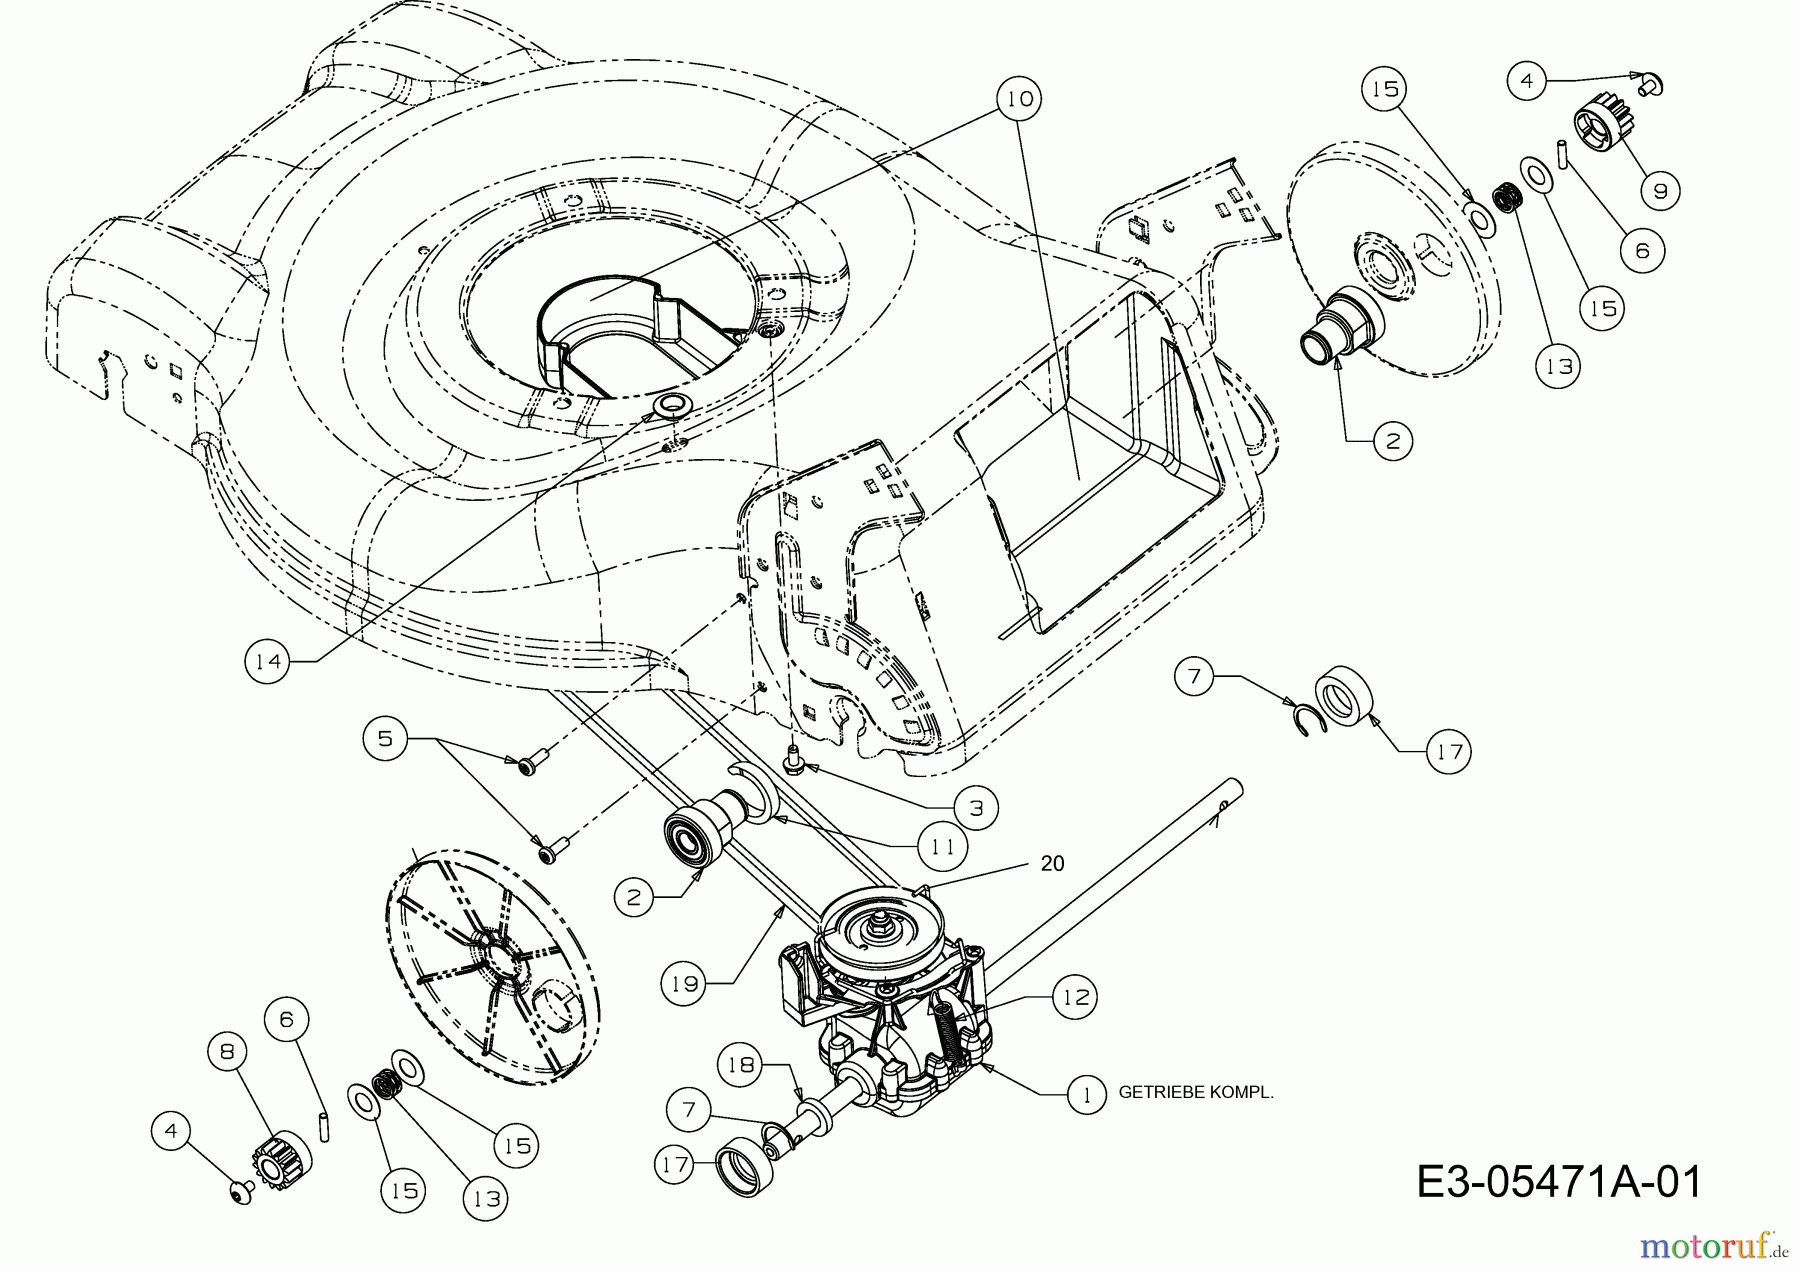  MTD Motormäher mit Antrieb GL 46 SPO 12D-J5JS686  (2011) Getriebe